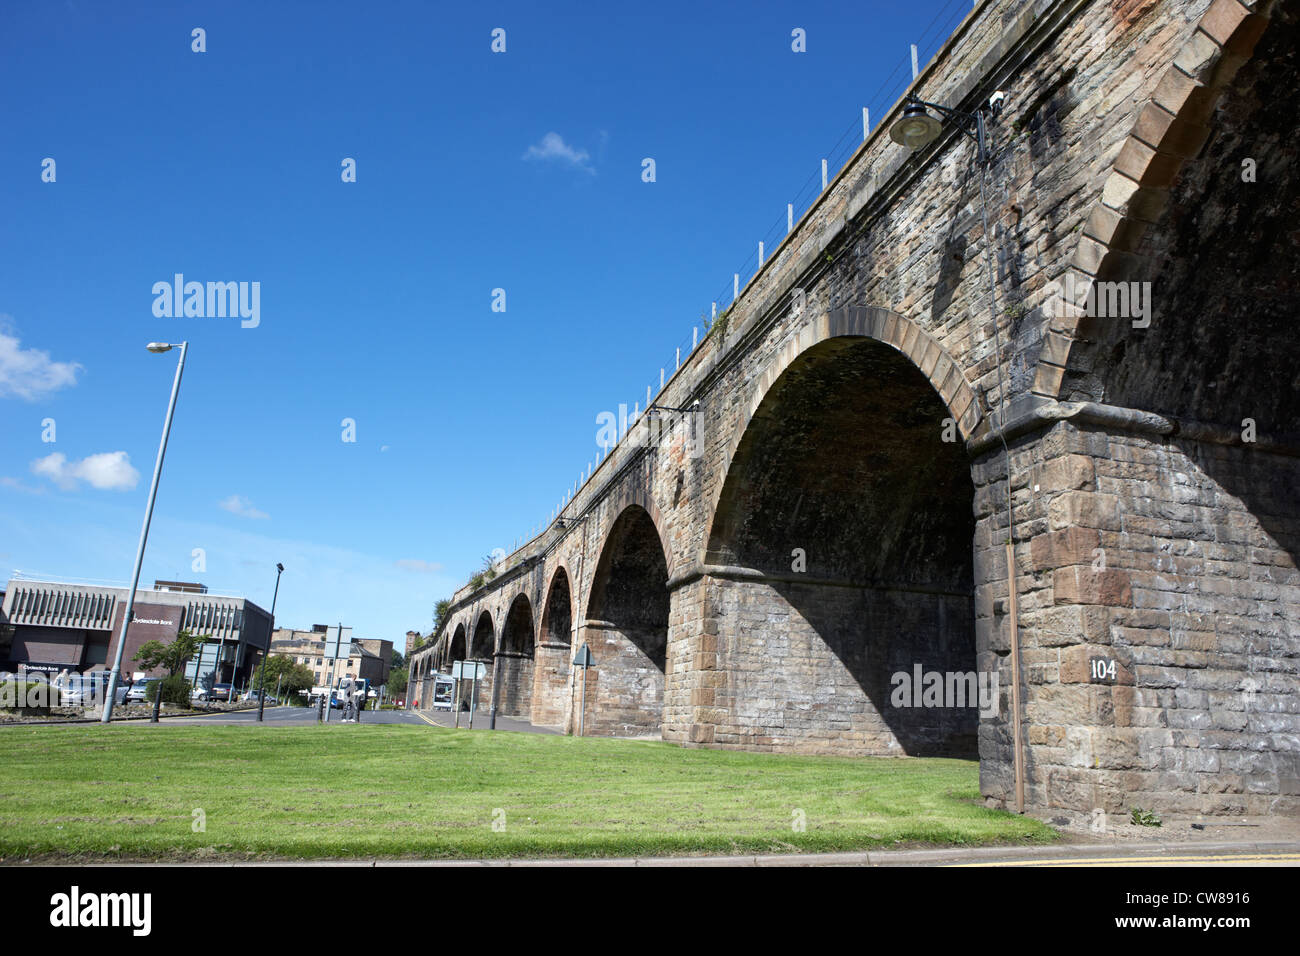 Viaducto Ferroviario kilmarnock Escocia uk reino unido Foto de stock